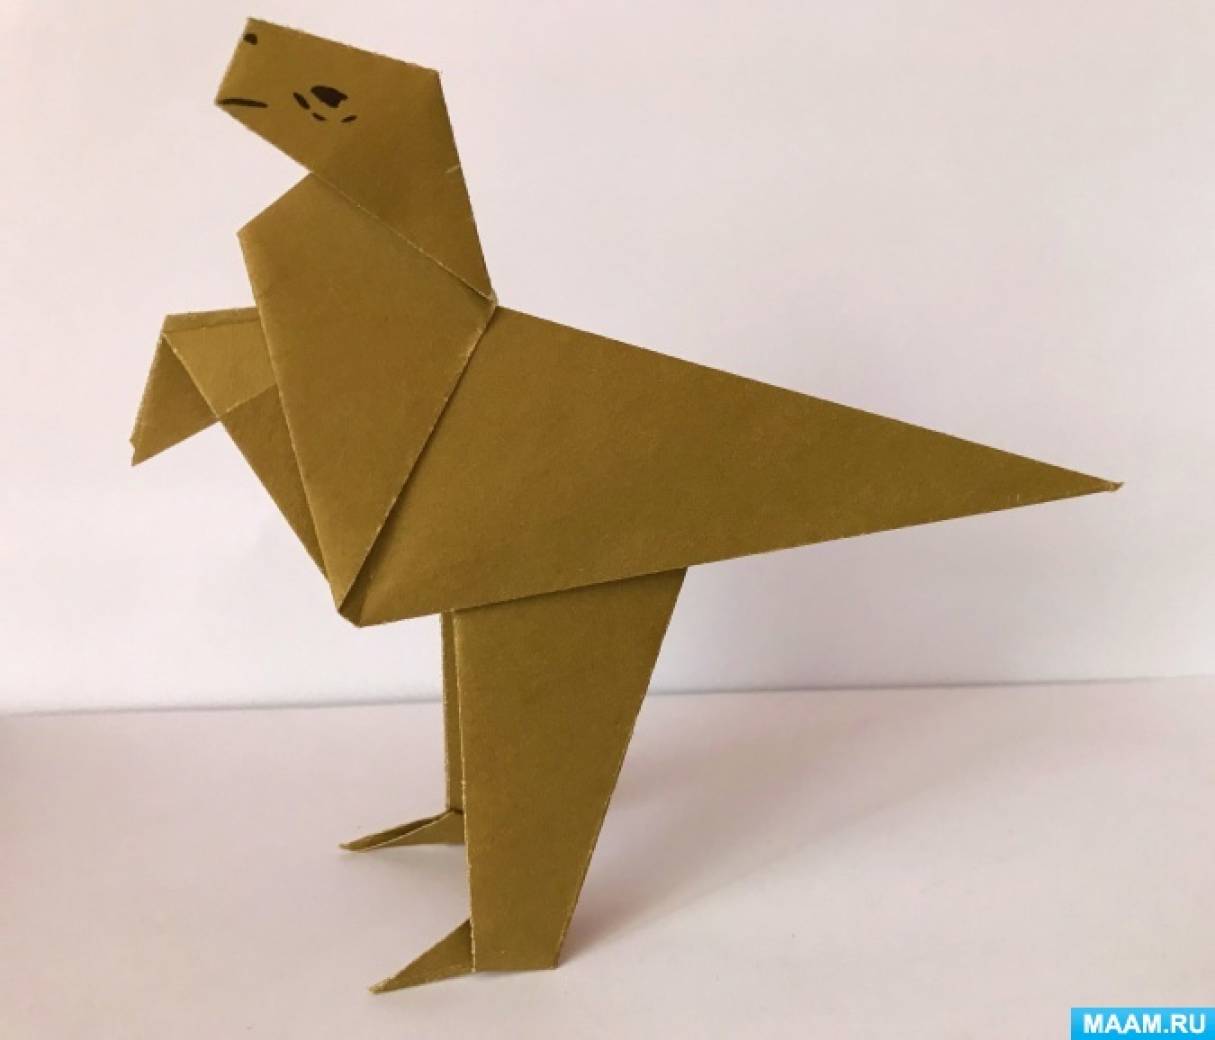 Мастер-класс по оригами из бумаги «Динозавр» для детей старшего дошкольного возраста